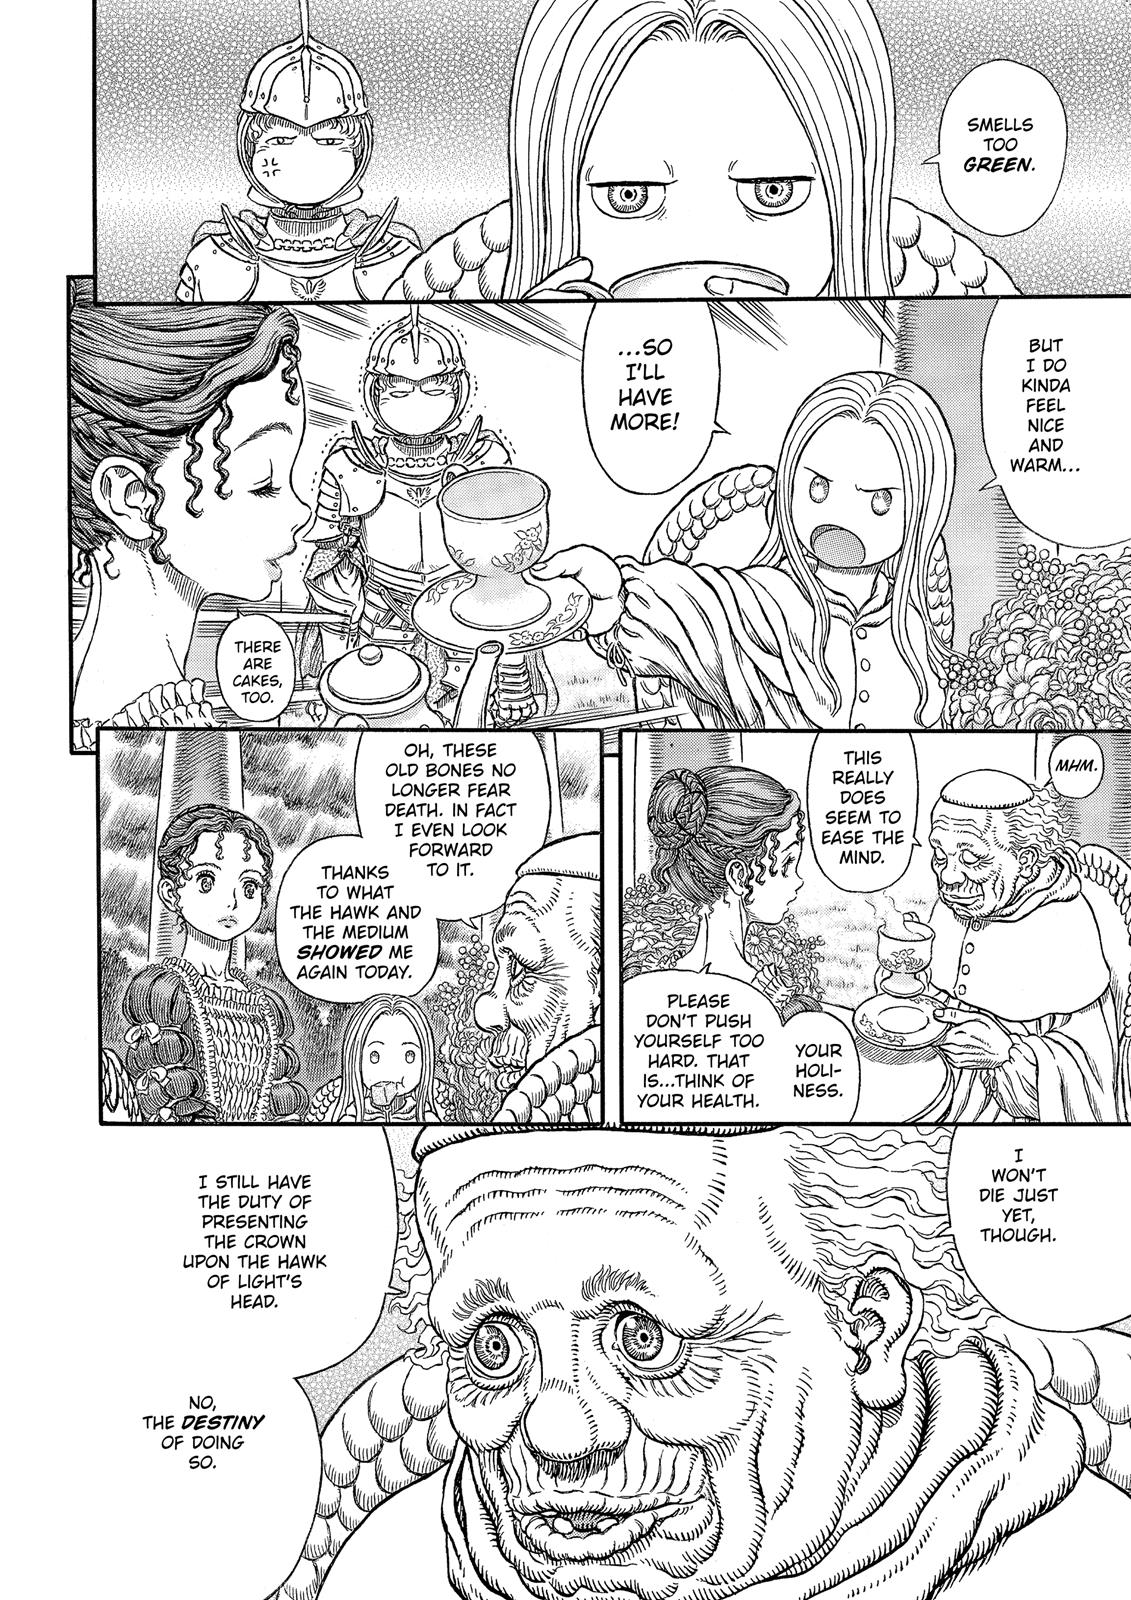 Berserk Manga Chapter 337 image 06